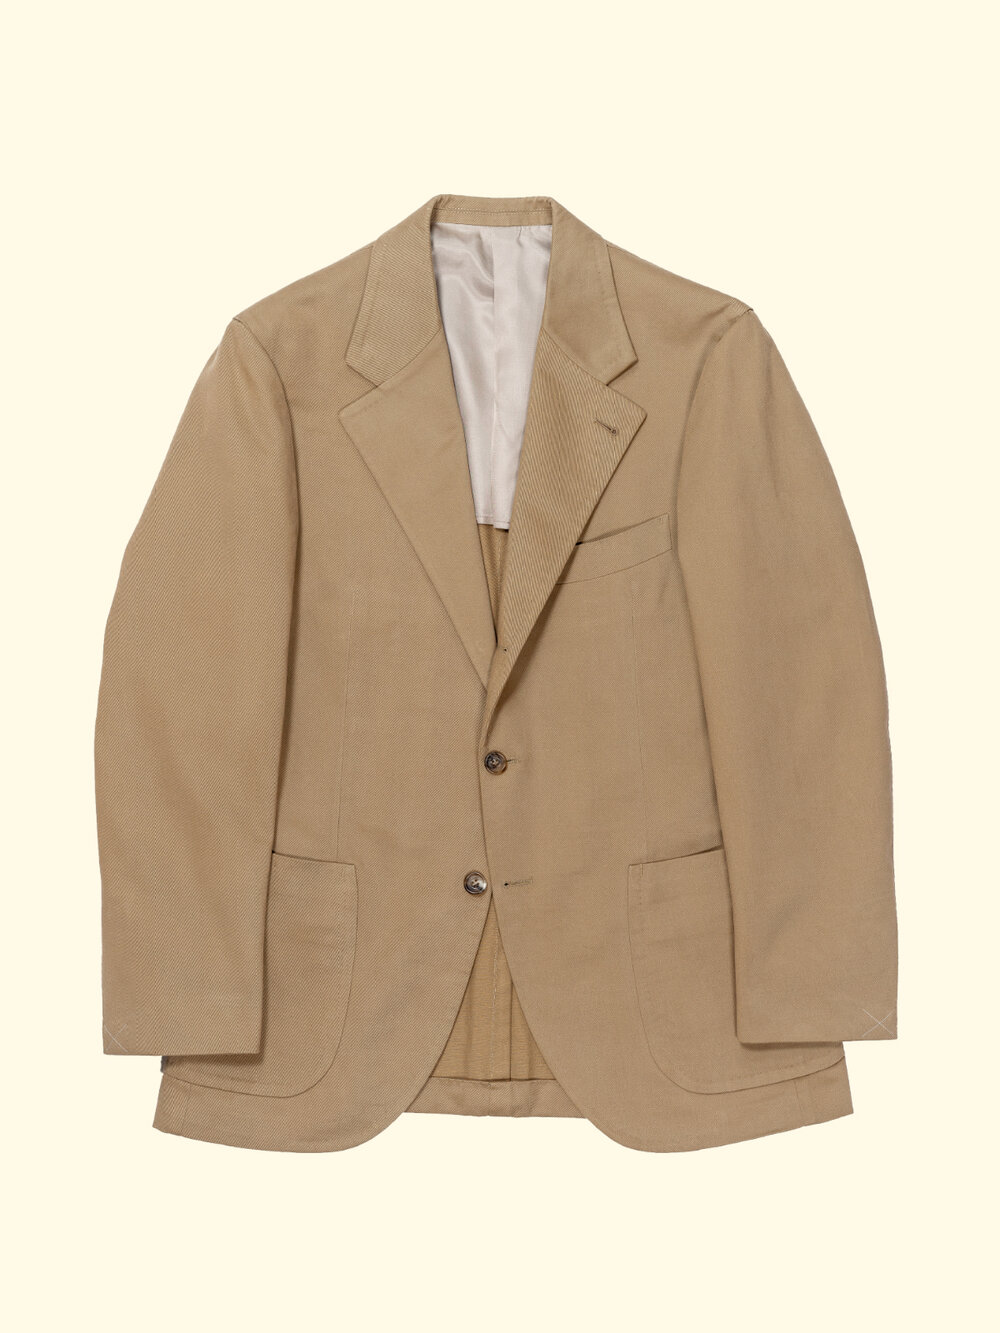 Brushed Cotton Suit Jacket - Peanut Khaki